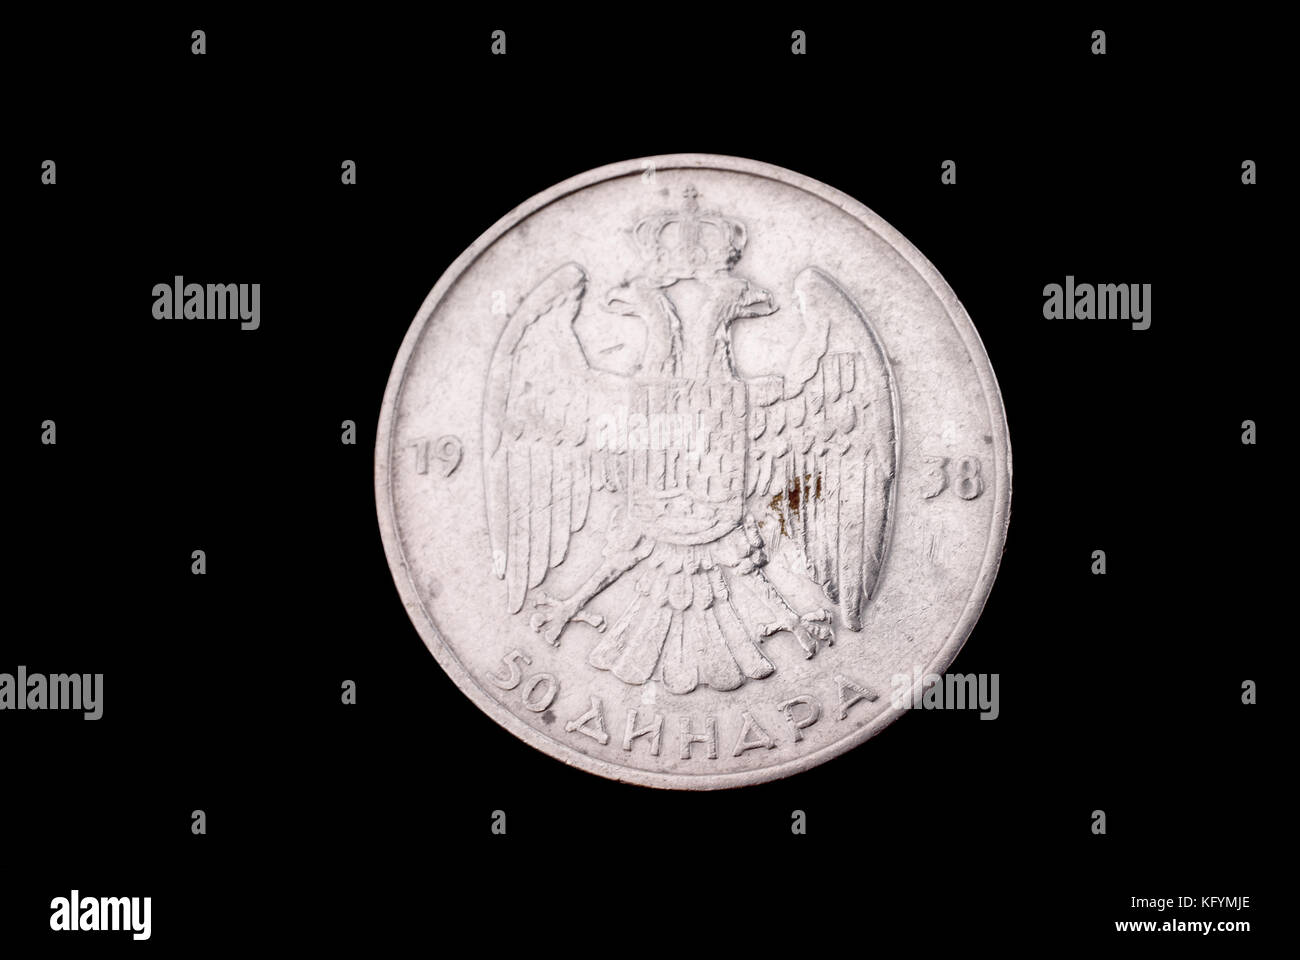 Königreich Jugoslawien alte Silbermünze (König Petr ii, 50 Dinars, 1938). in die Stellung REVERSE (Rückwärtsgang) (der Münze). Stockfoto